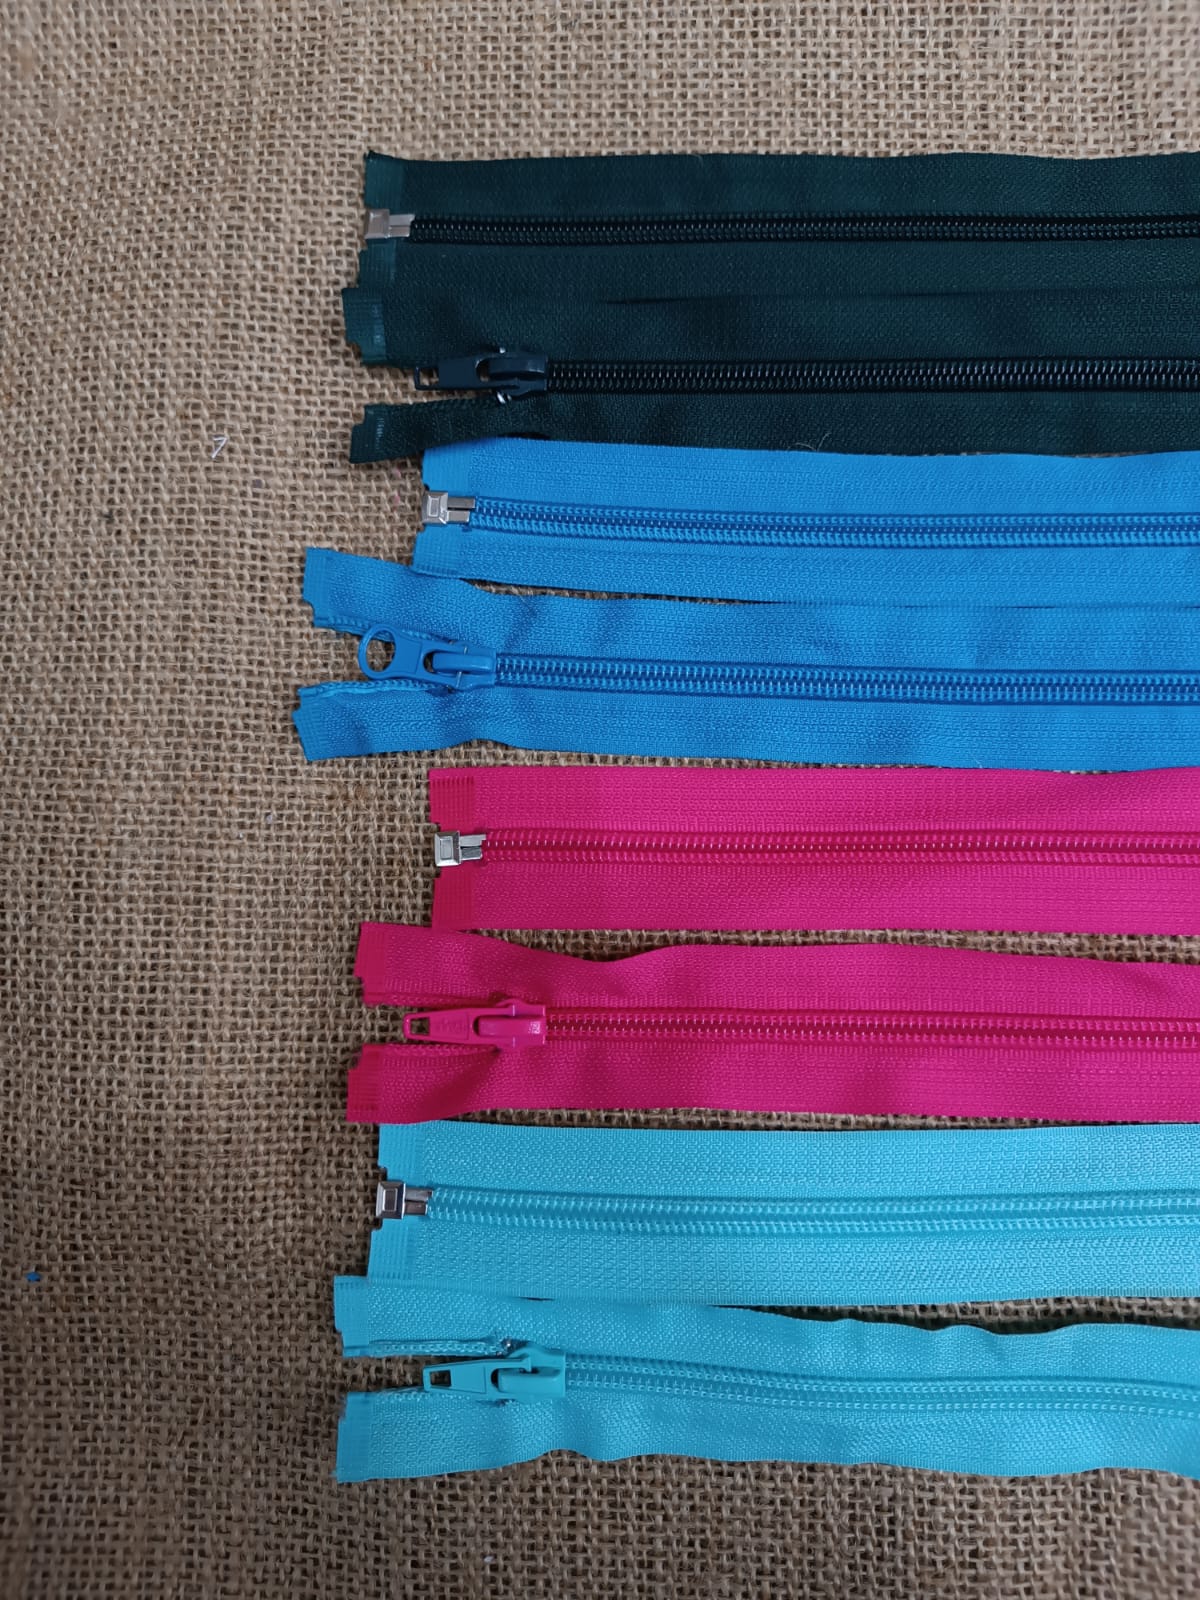 Cremalleras para Chaqueta Nylon – Textiles Tinokos